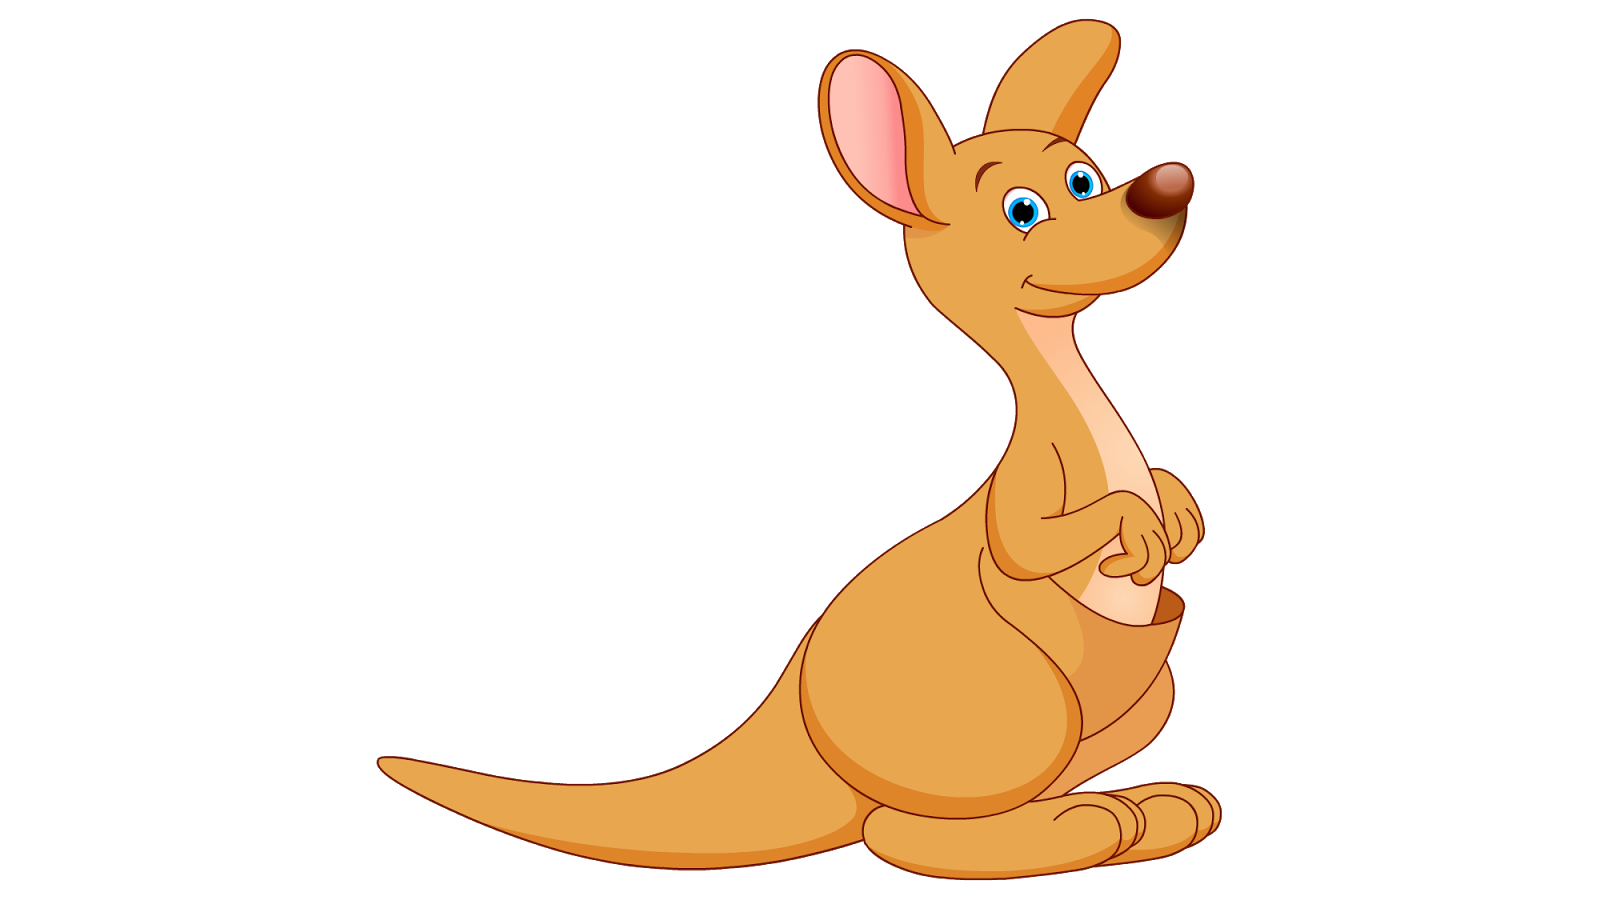 Orange clipart kangaroo, Orange kangaroo Transparent FREE ...